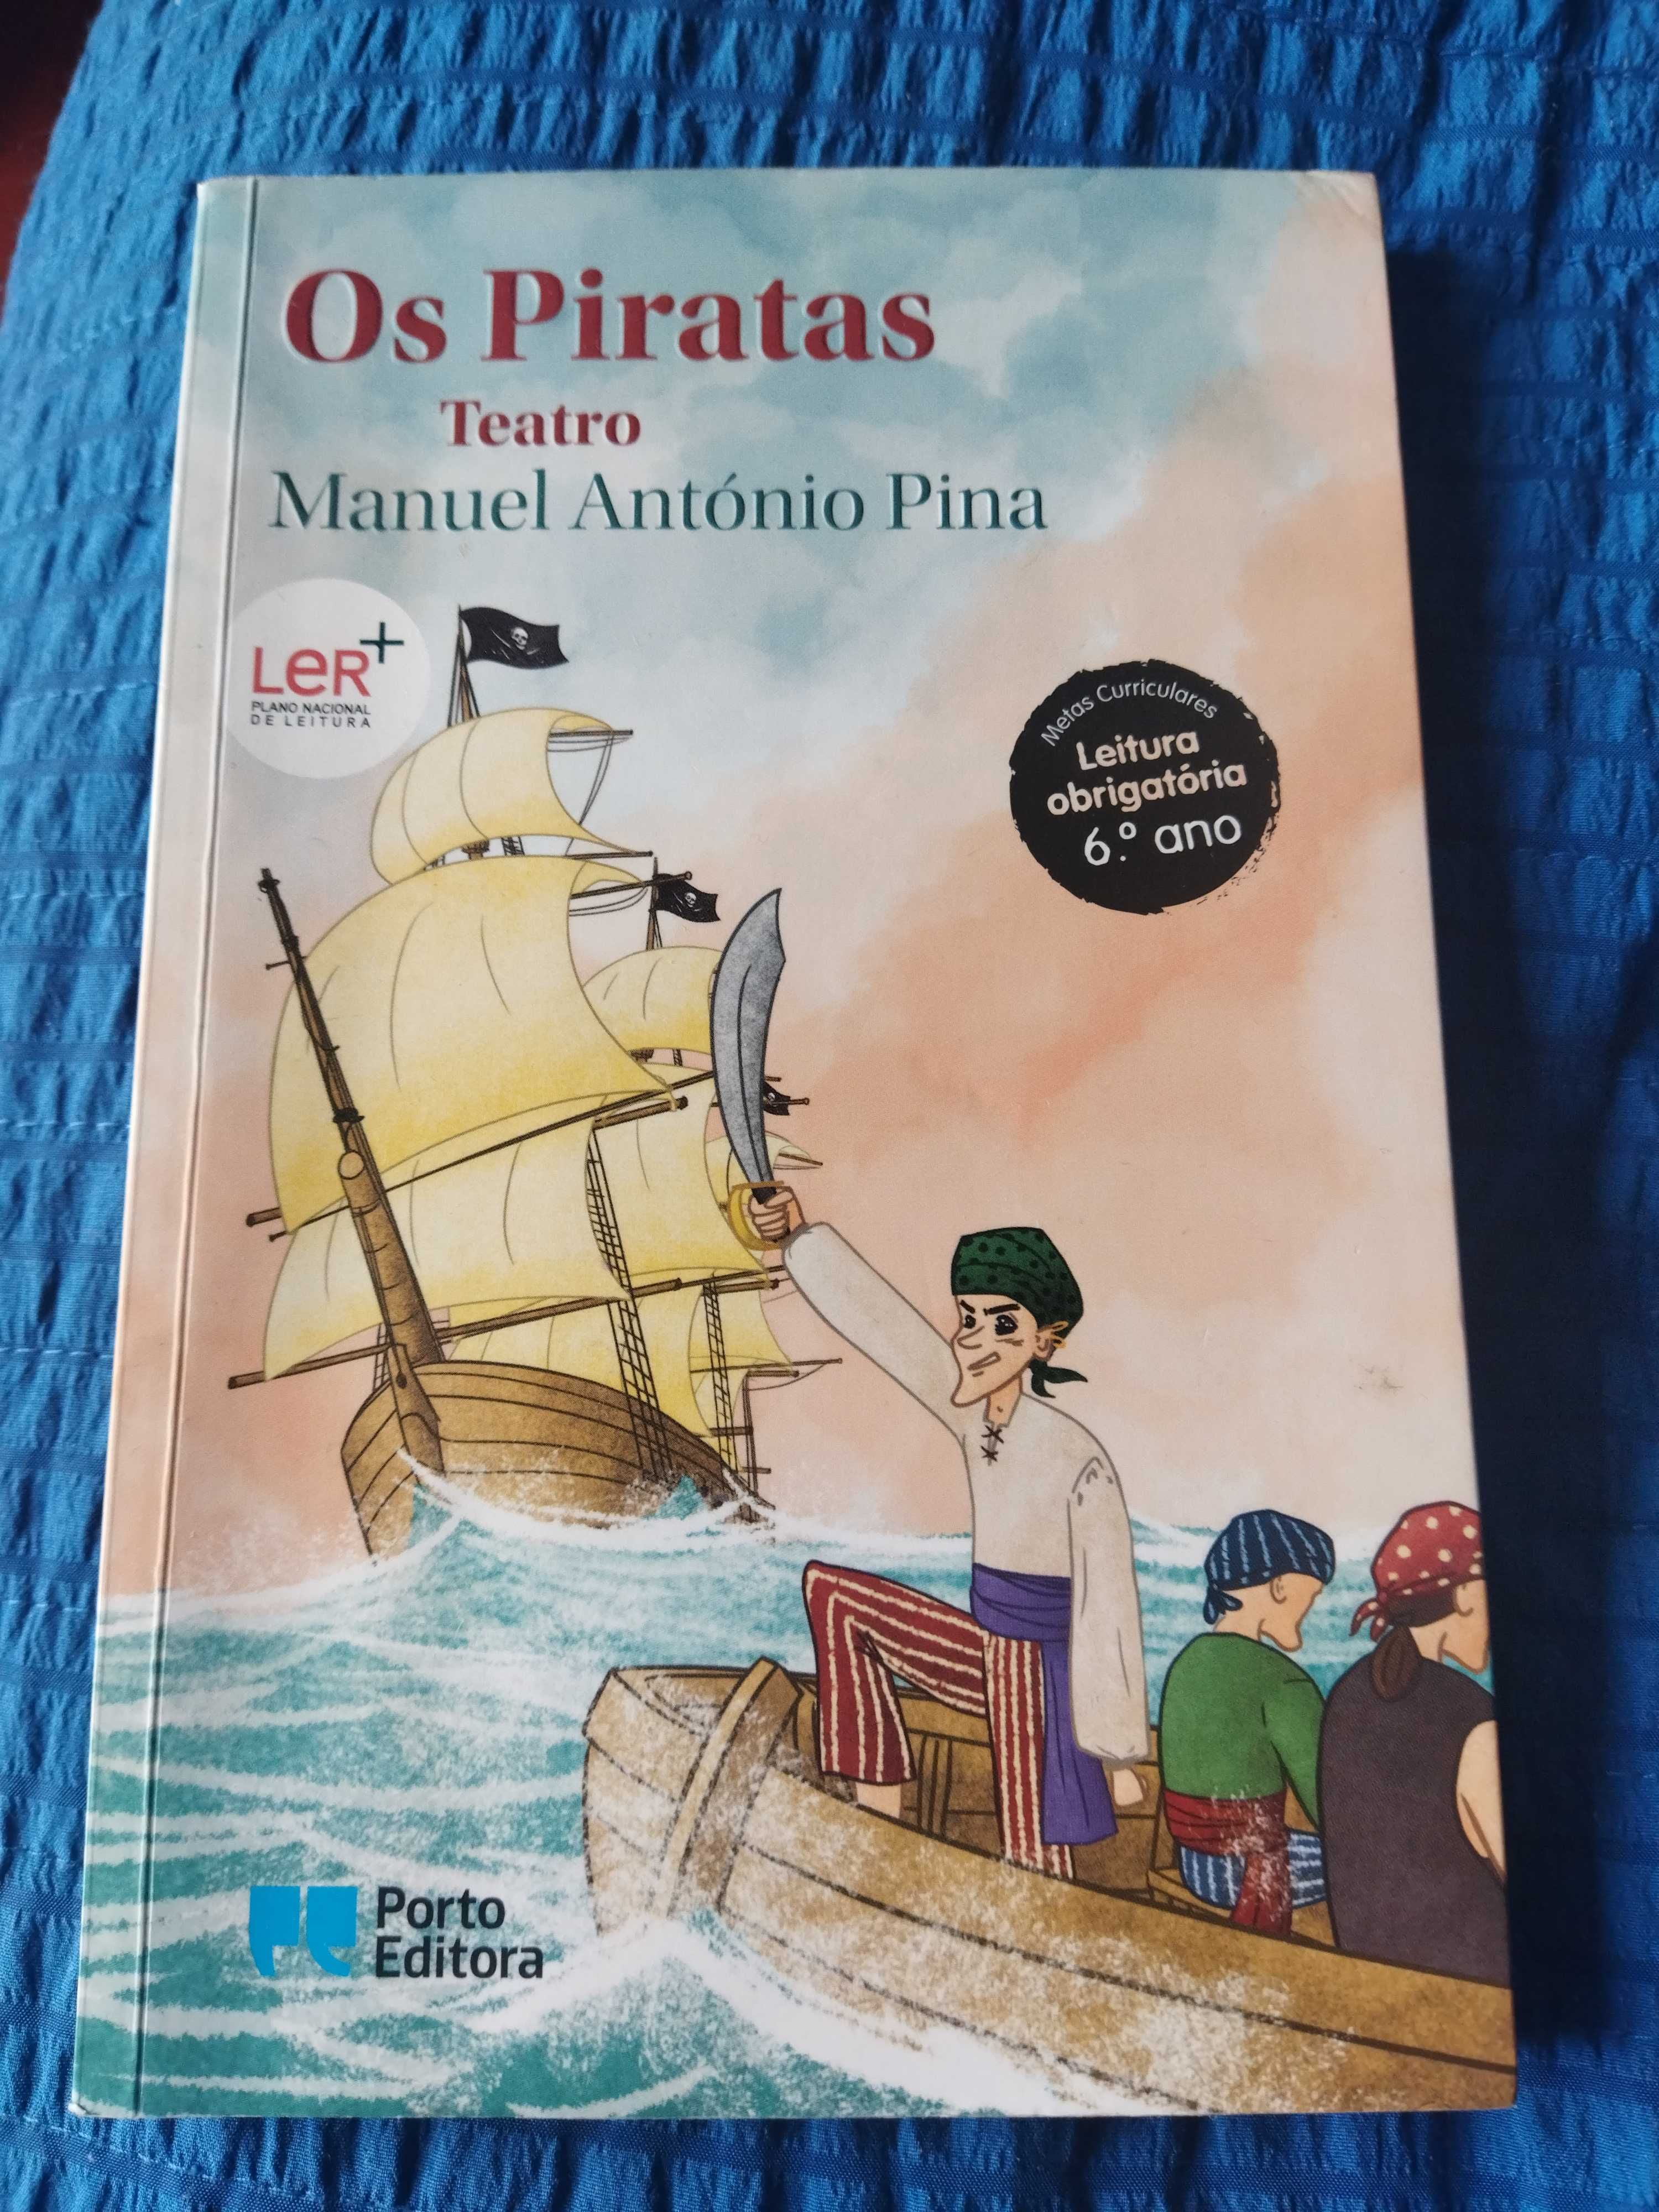 Livro  "Os piratas"